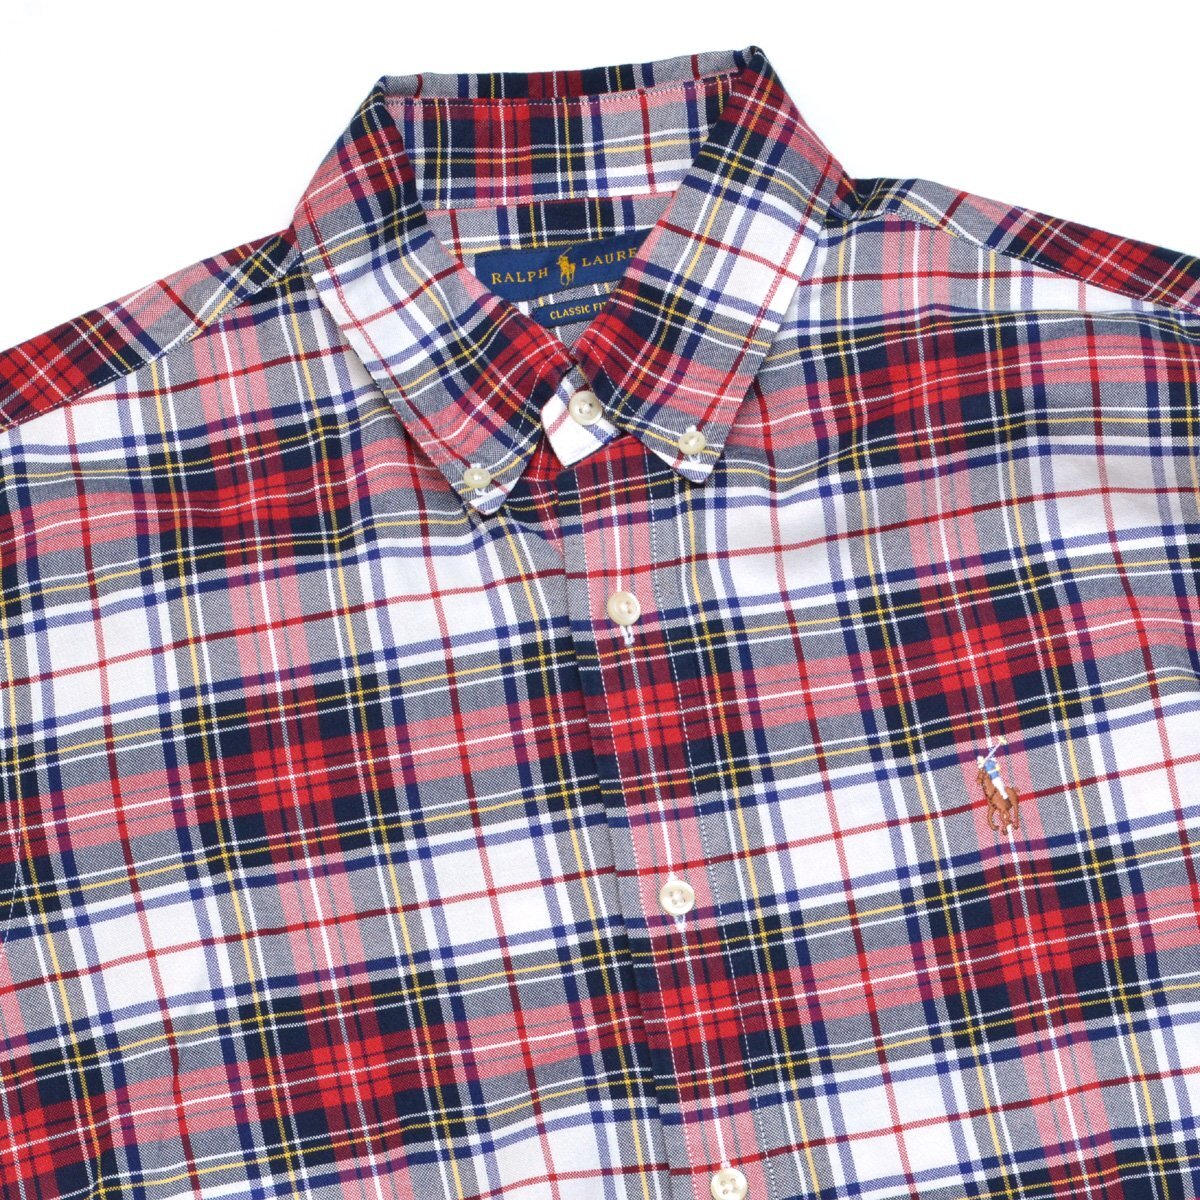 RALPH LAUREN ラルフローレン ボタンダウンシャツ BDシャツ CLASSIC FIT オックスフォード カラーポニー刺繍 長袖 Mサイズ メンズ M878725_画像3